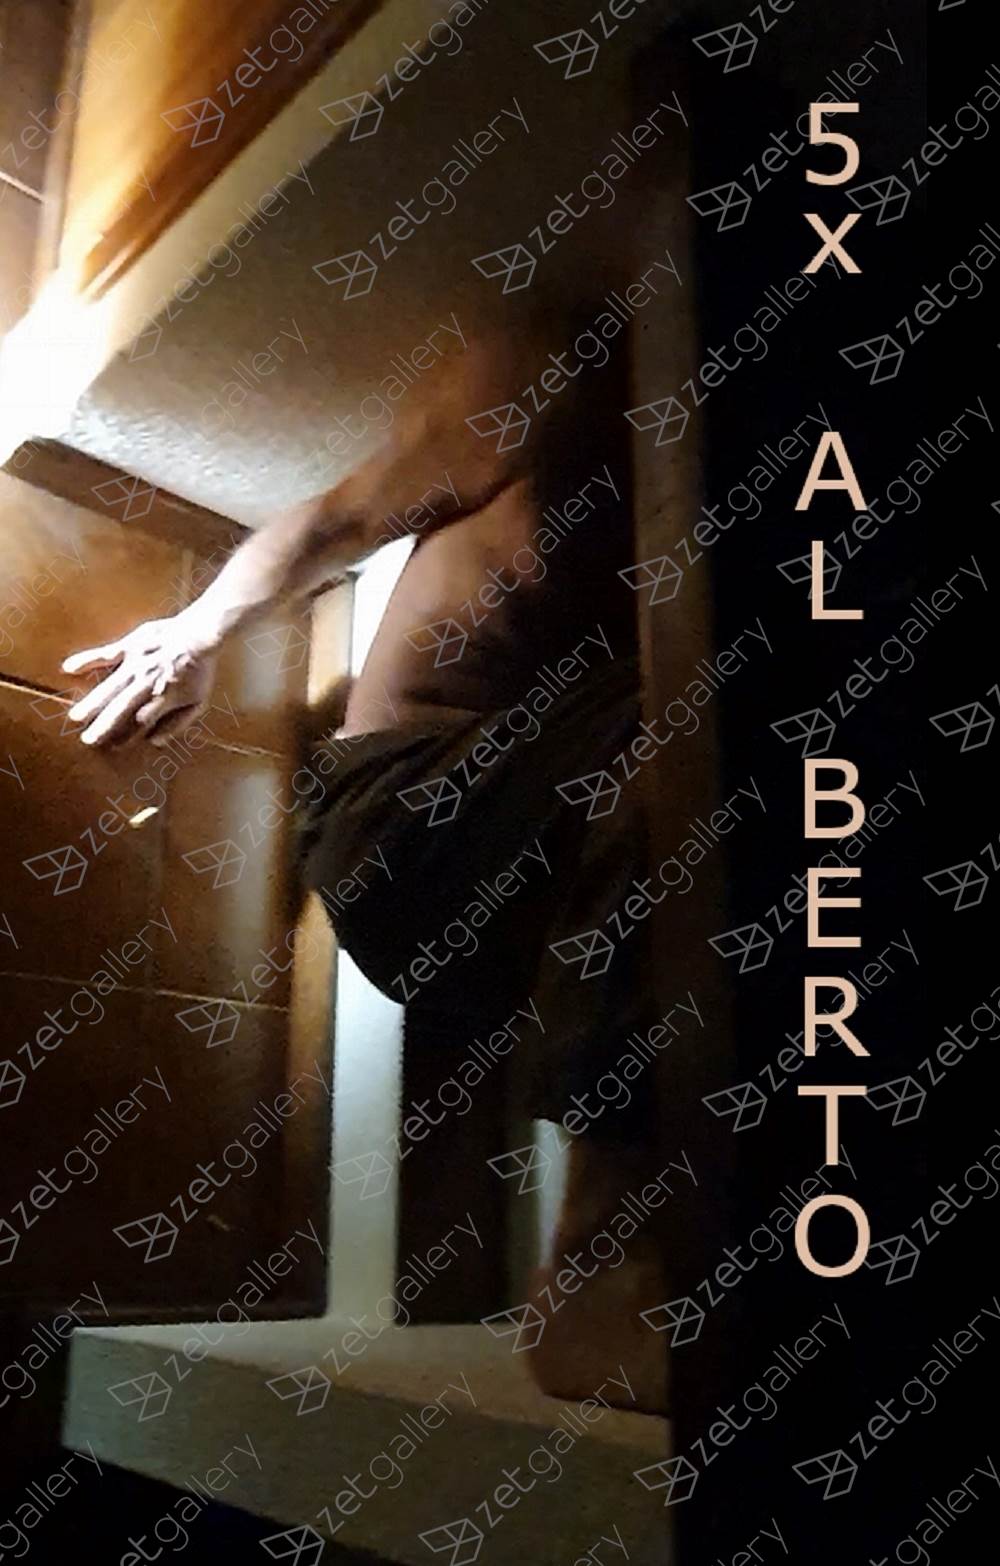 5X AL BERTO, Fotografia Digital Abstrato original por Vivaldo  Franco 